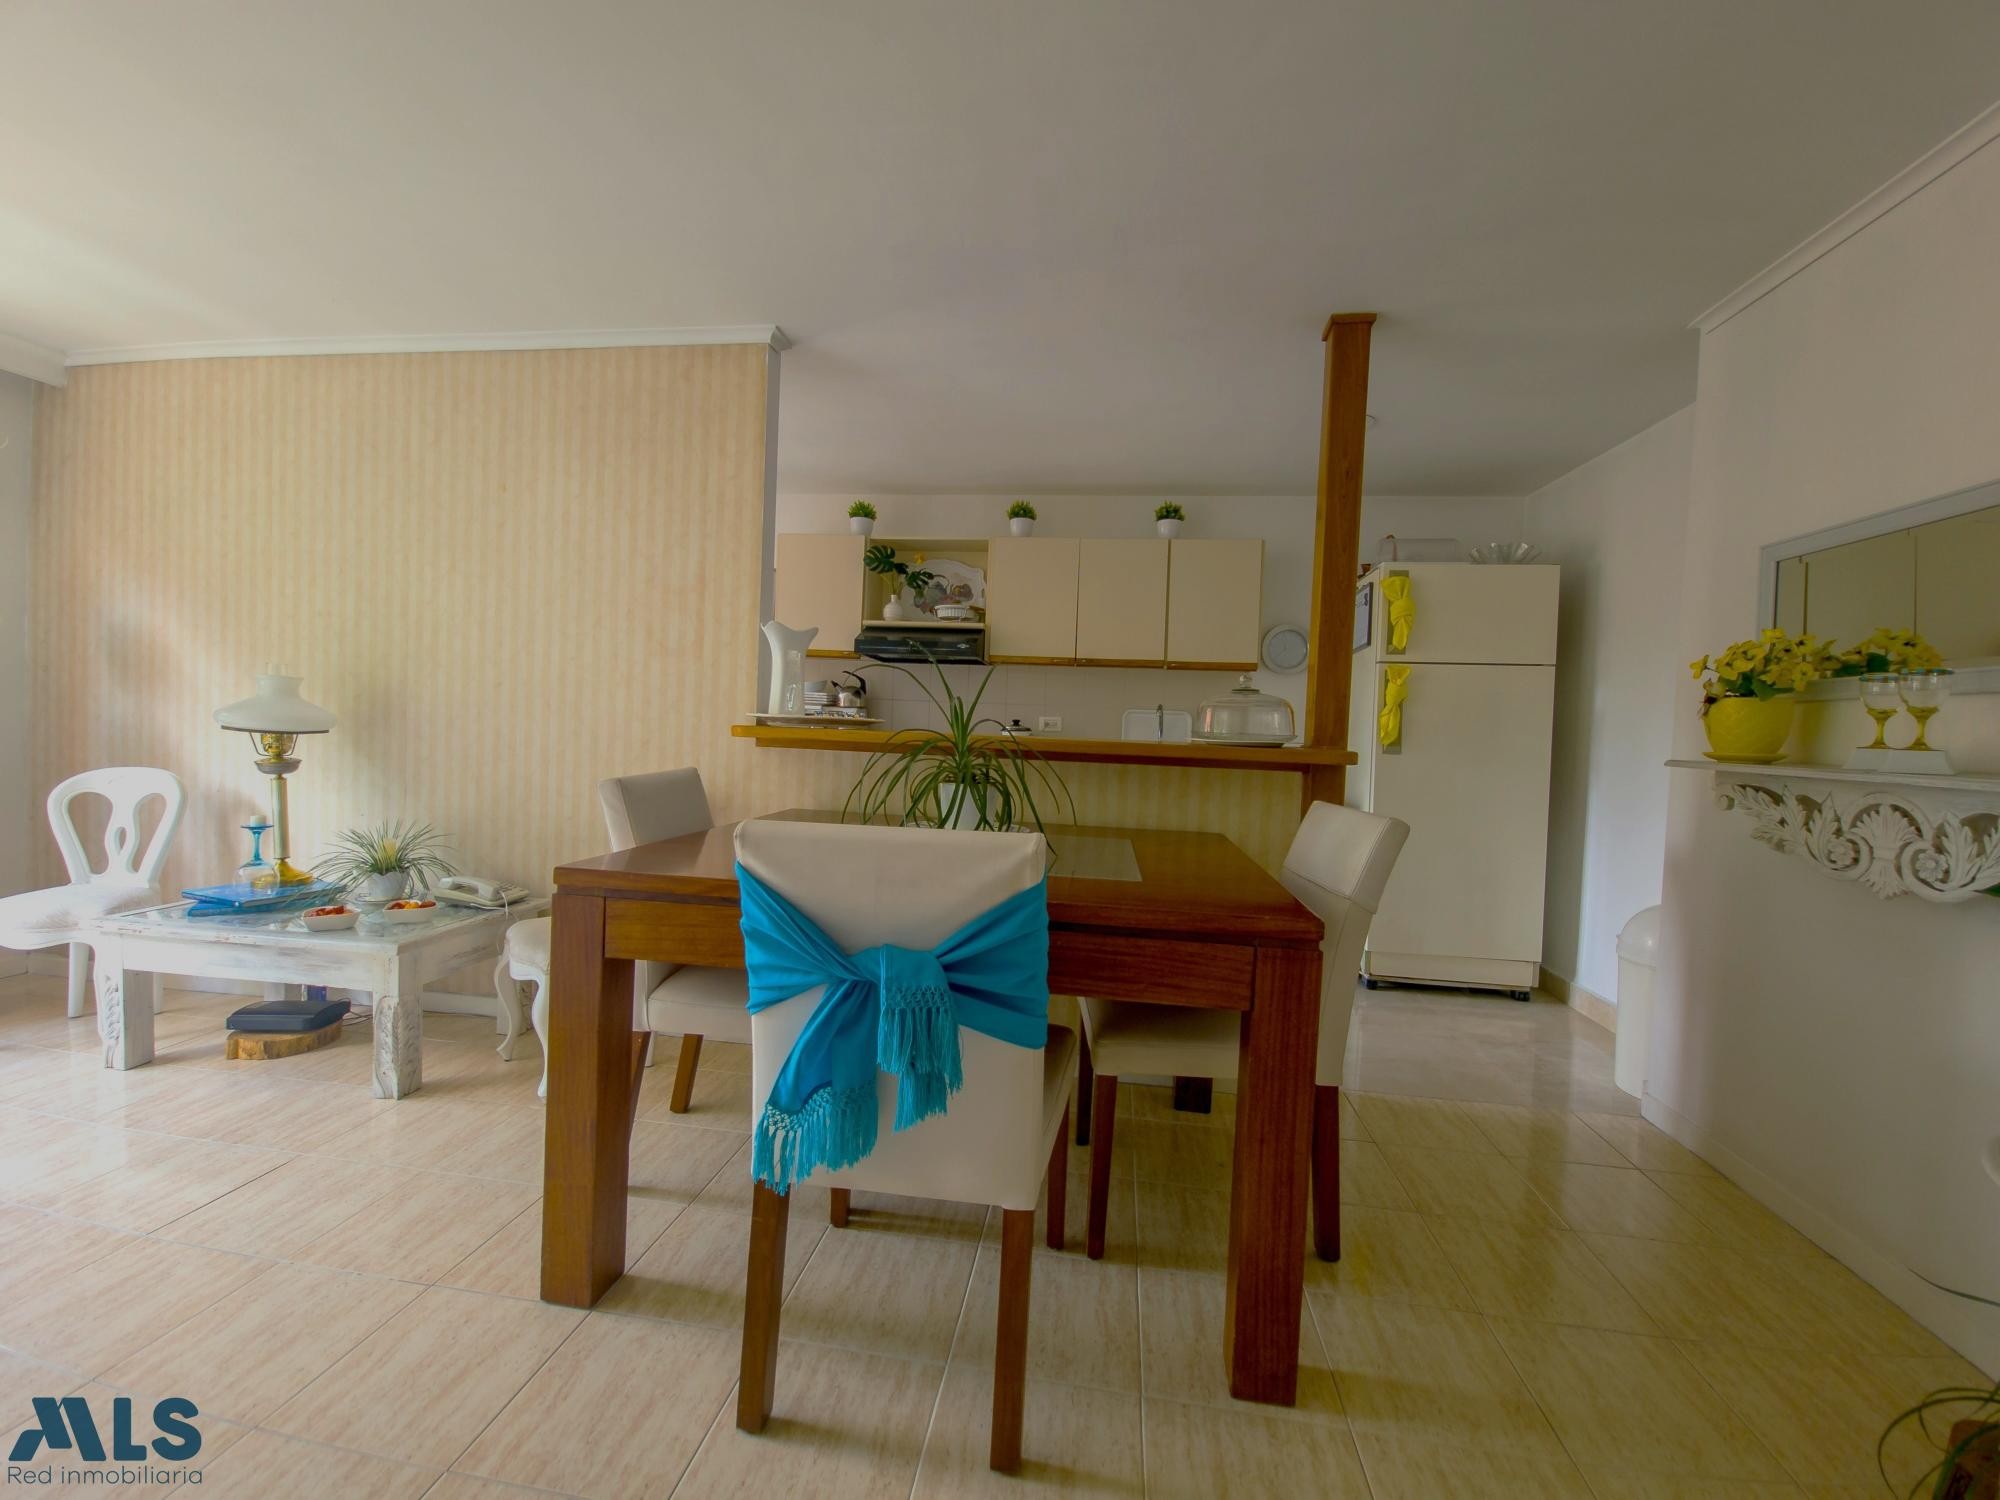 Apartamento en Laureles, Medellin medellin - lorena